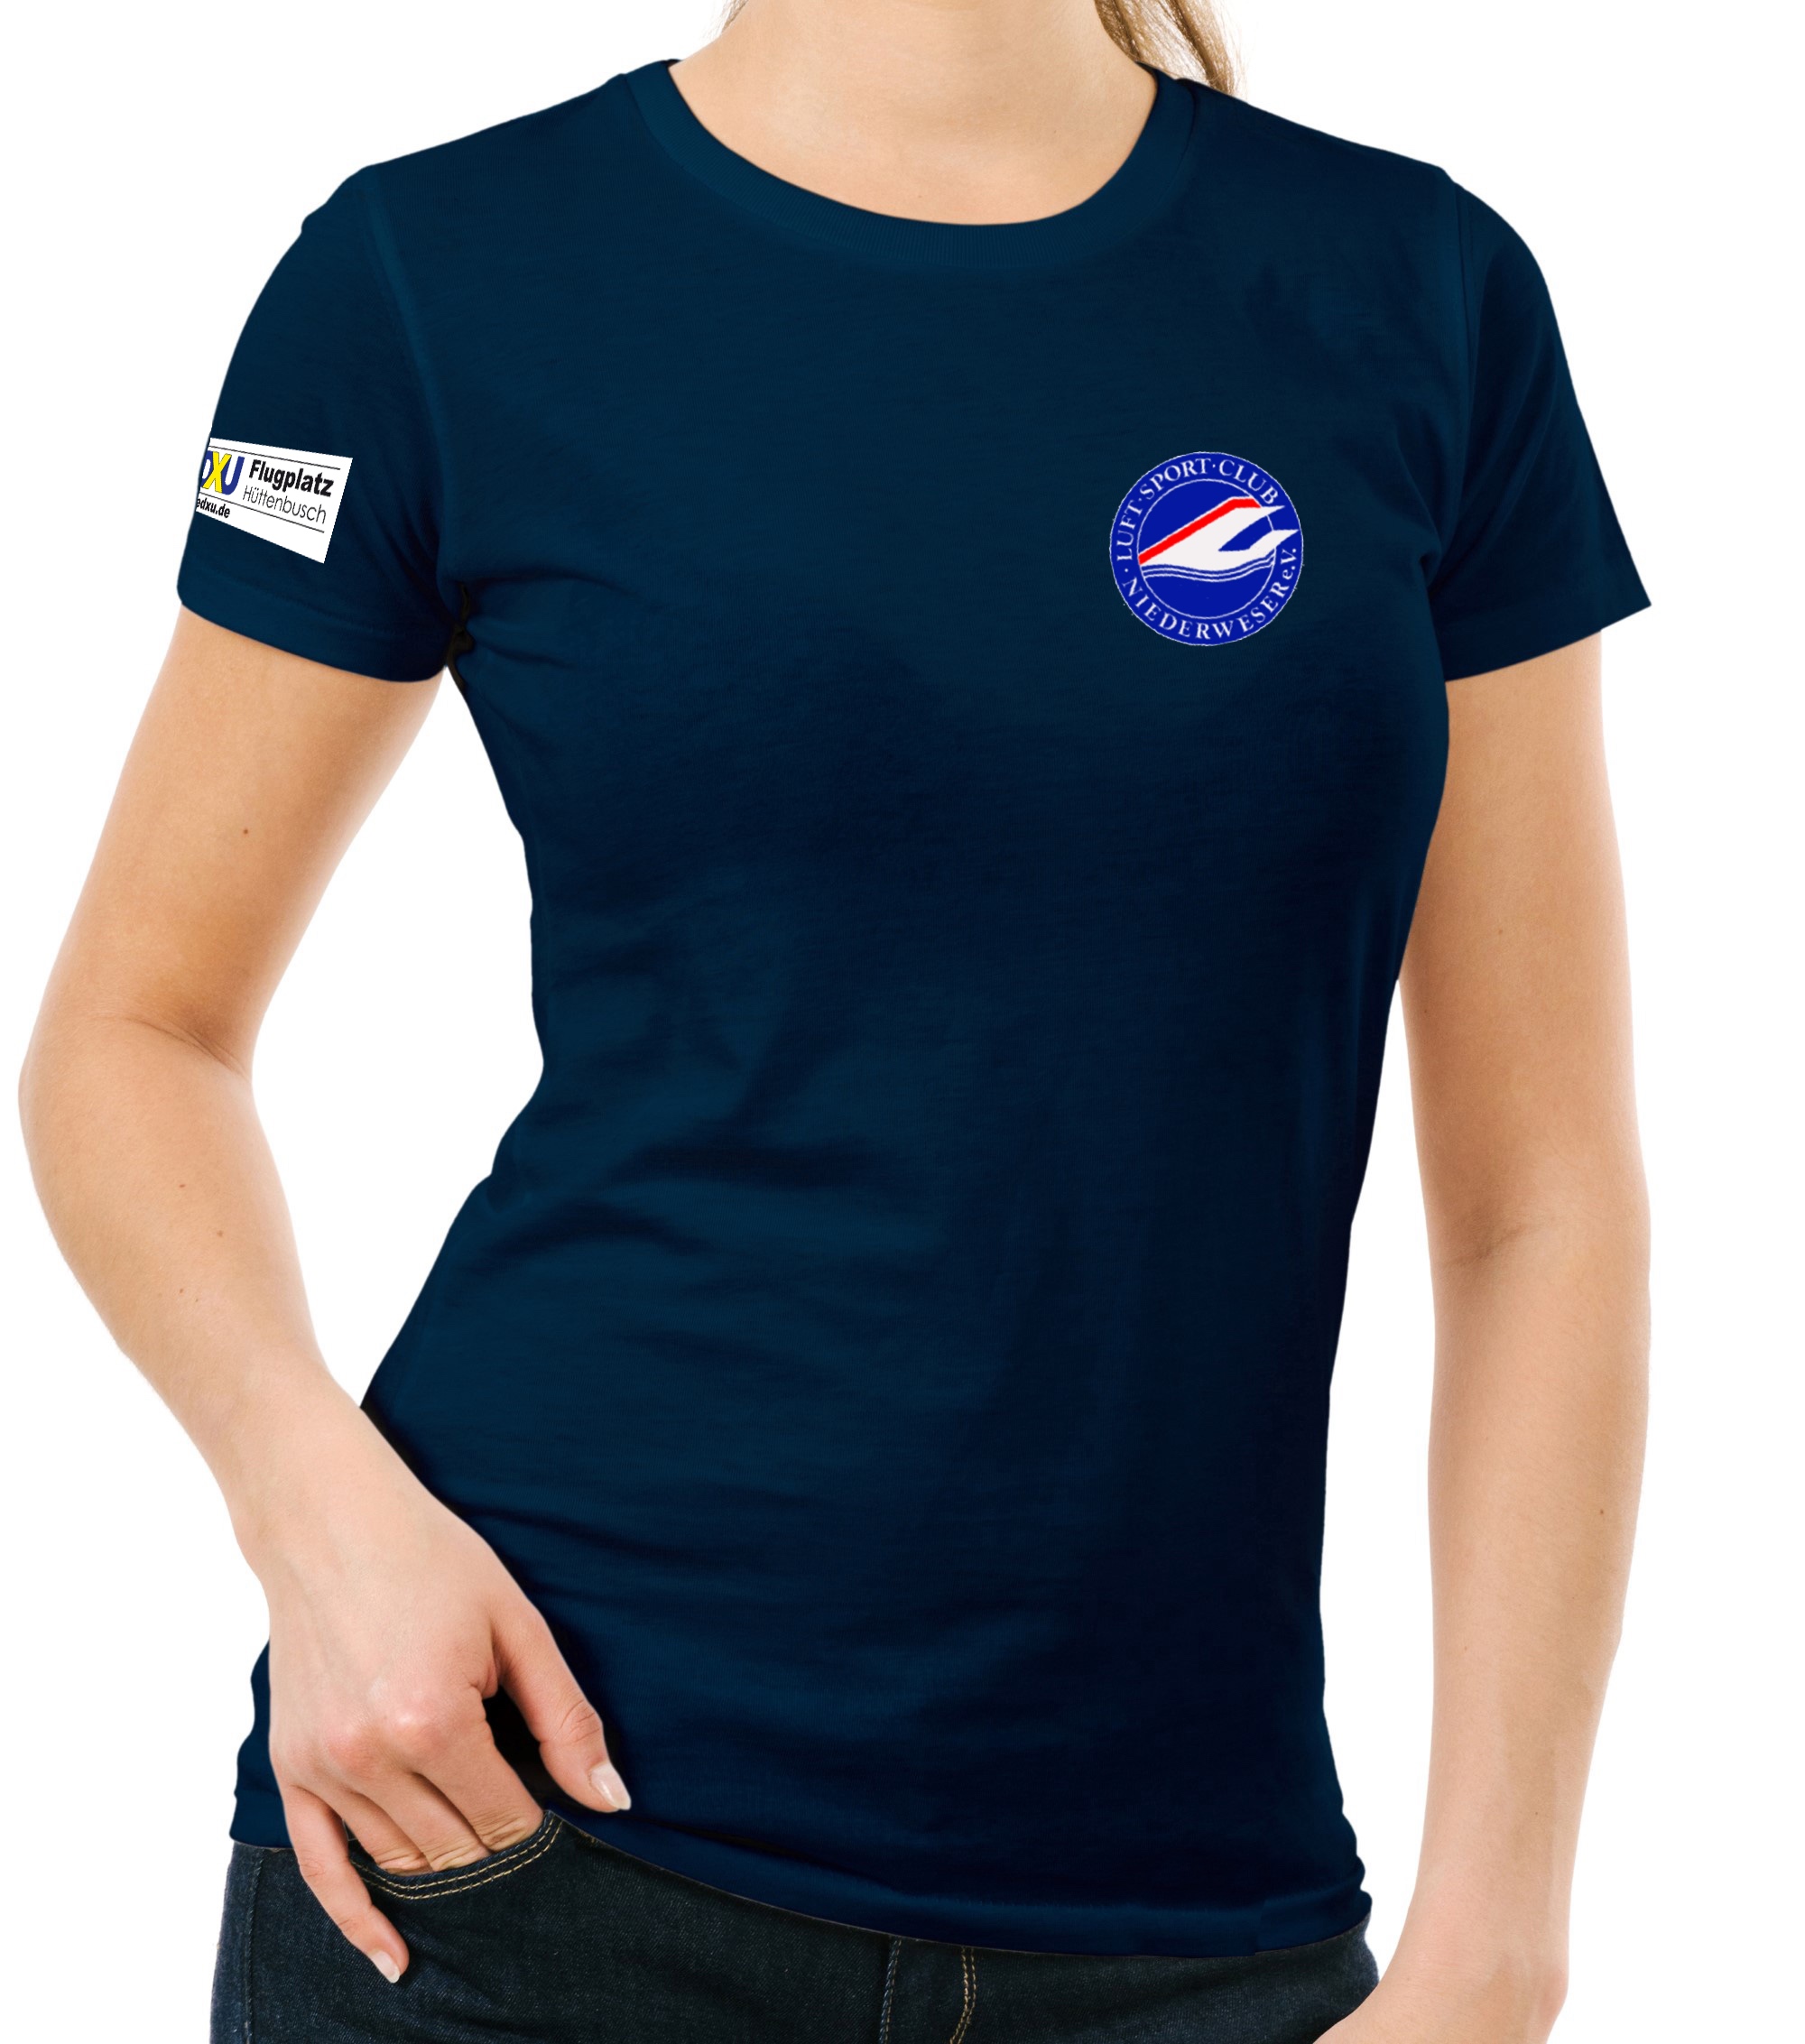 Damen T-Shirt LSC Niederweser e.V.